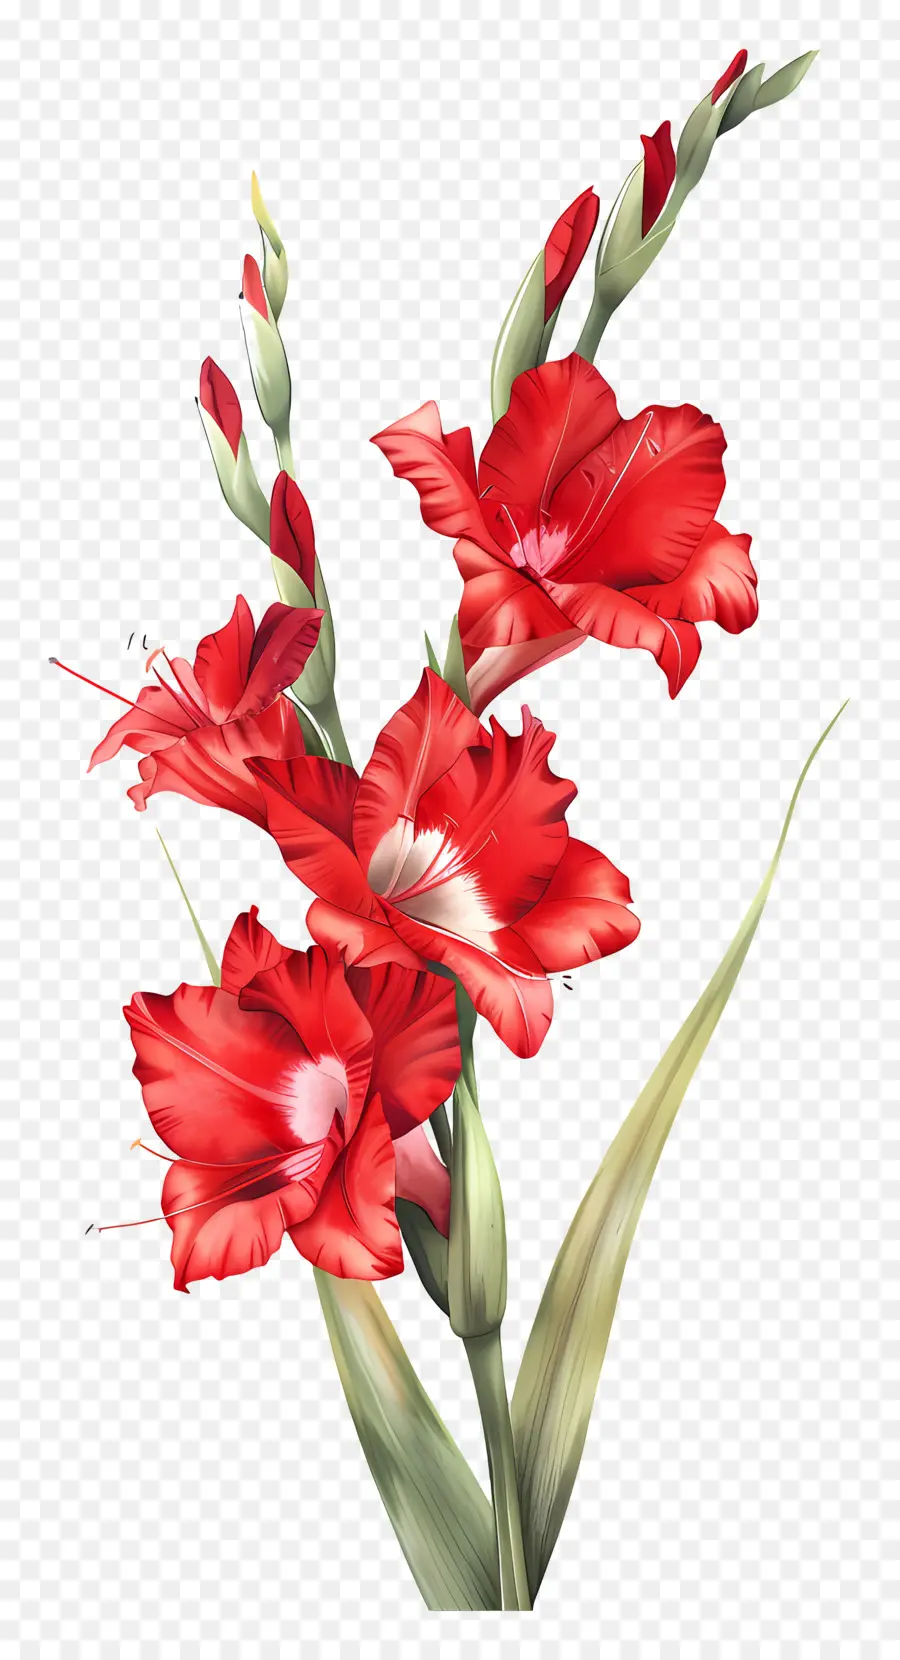 glacioli rossi fiori rossi fiori vibranti piccoli petali lunghi disposizione floreale rossa - Fiori rossi vibranti con foglie verdi